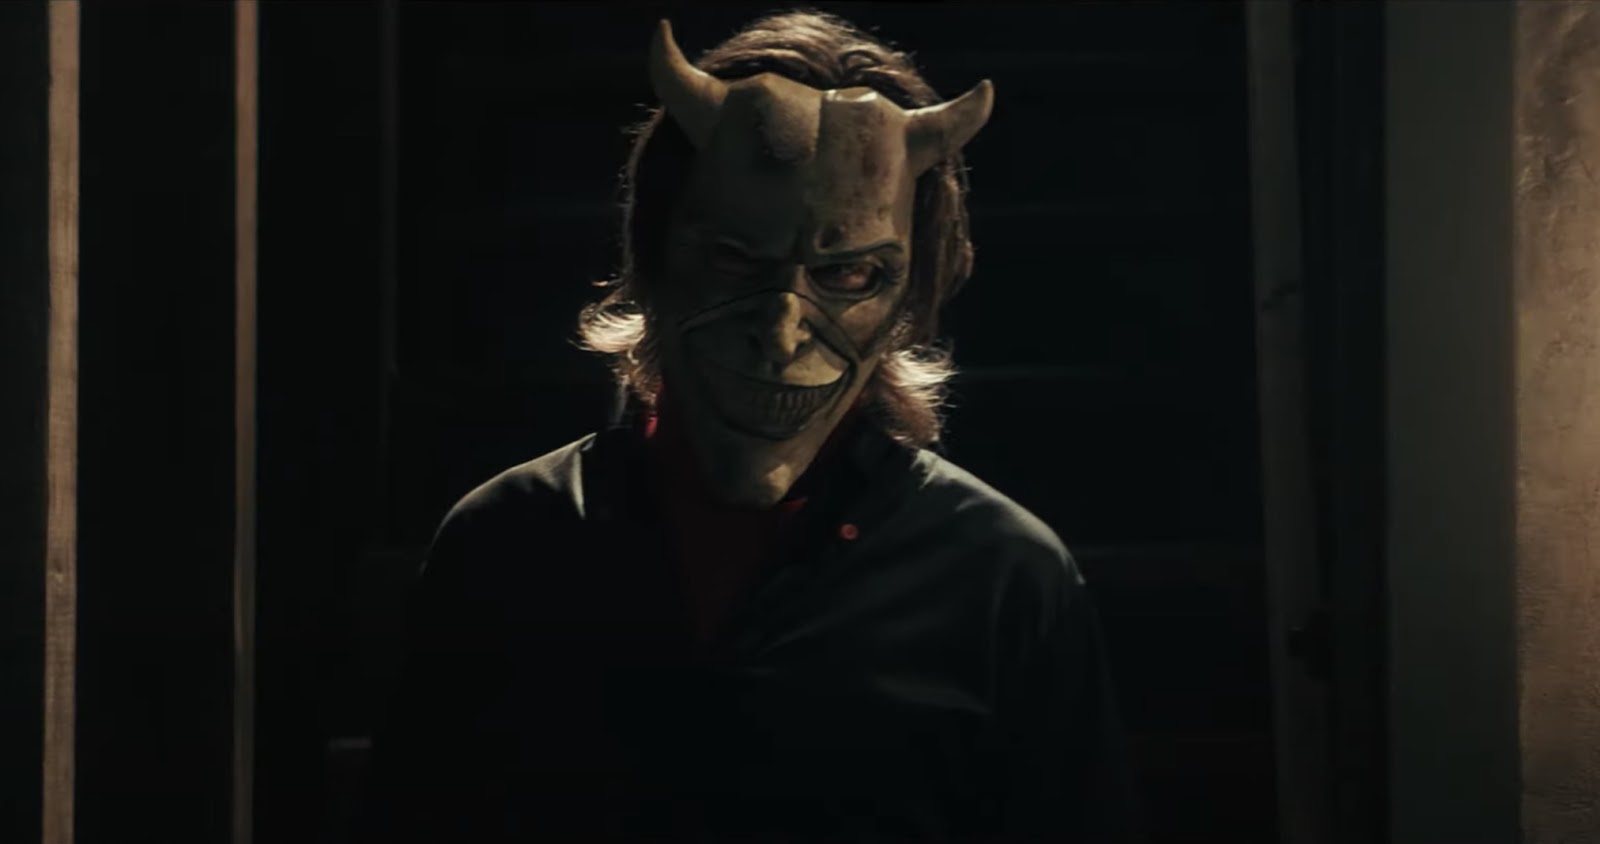 Wagner Moura interpreta espião no trailer de “Wasp Network”, novo filme da  Netflix